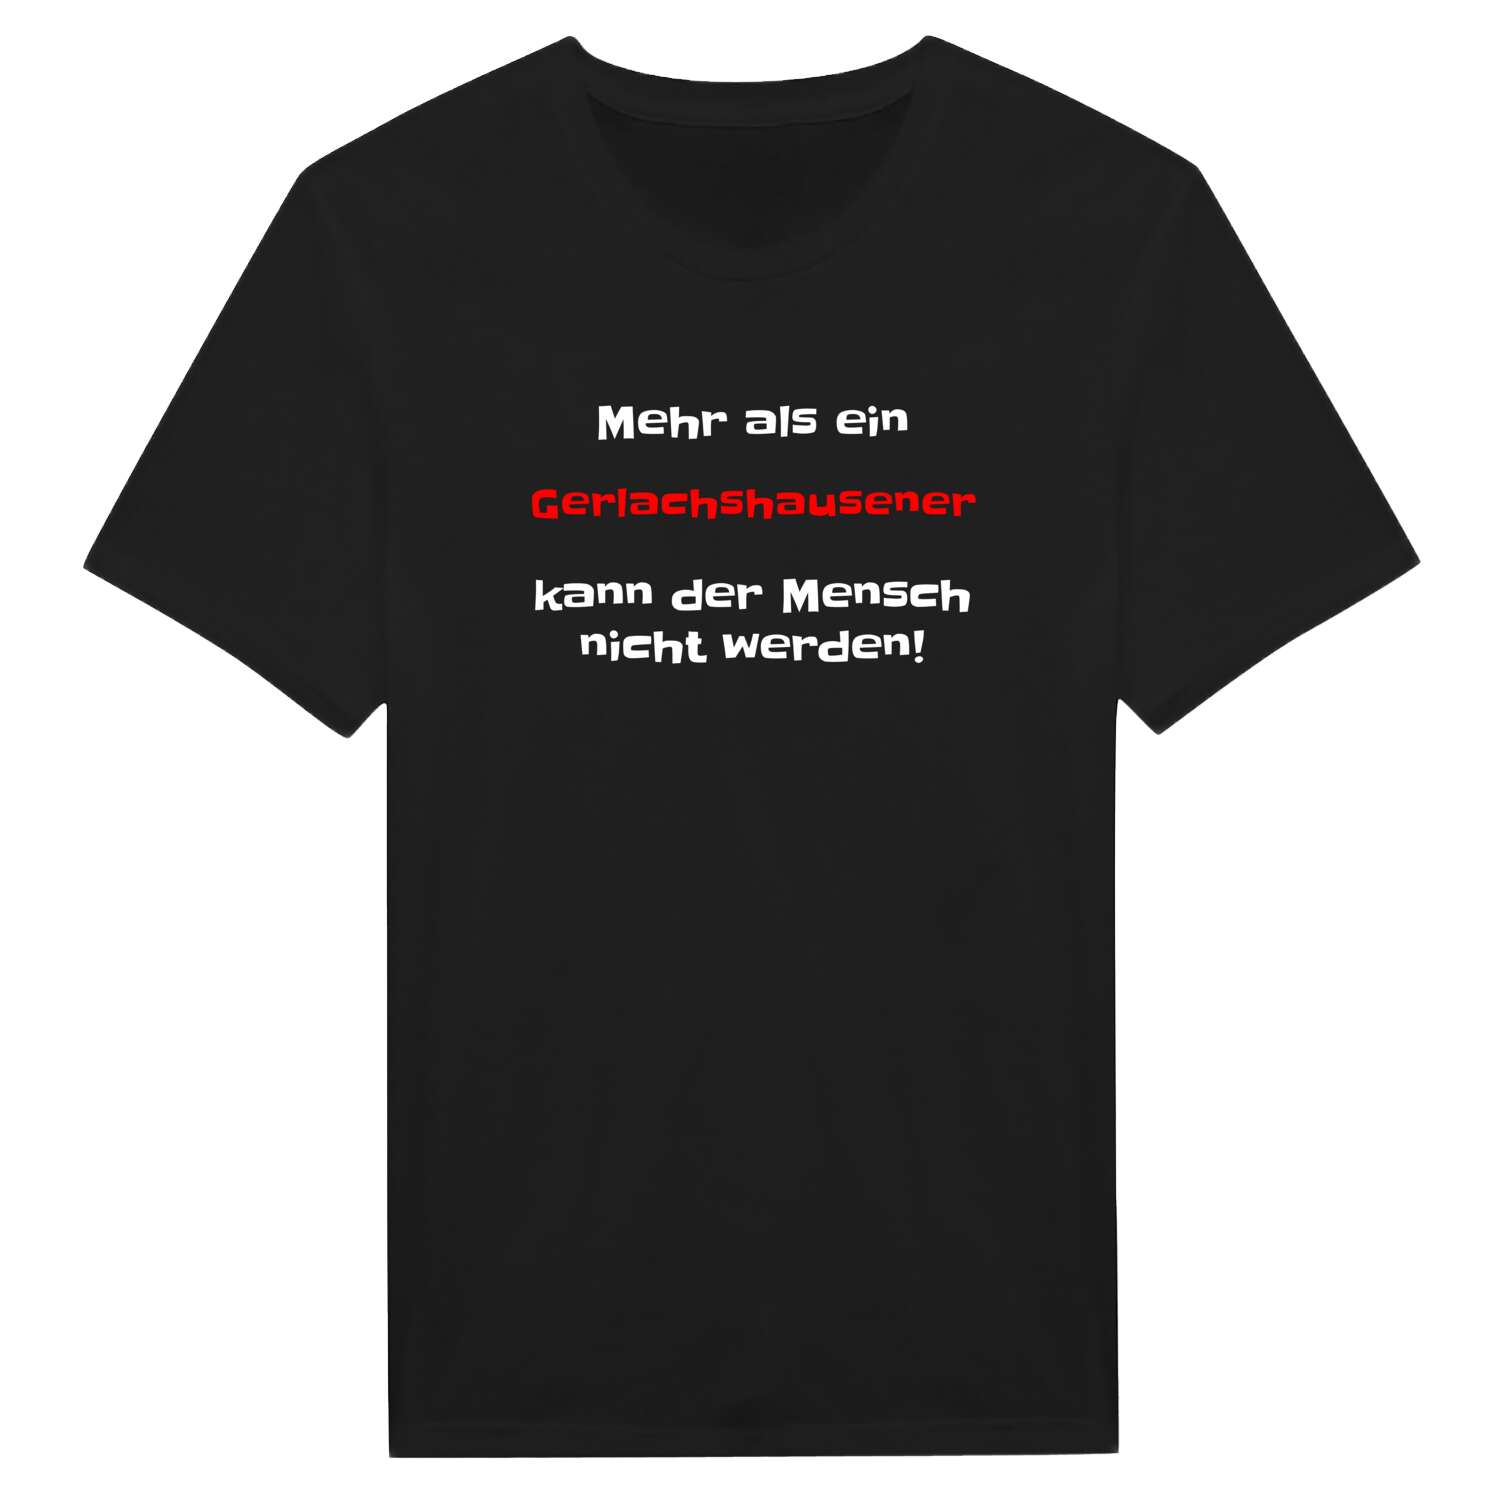 Gerlachshausen T-Shirt »Mehr als ein«